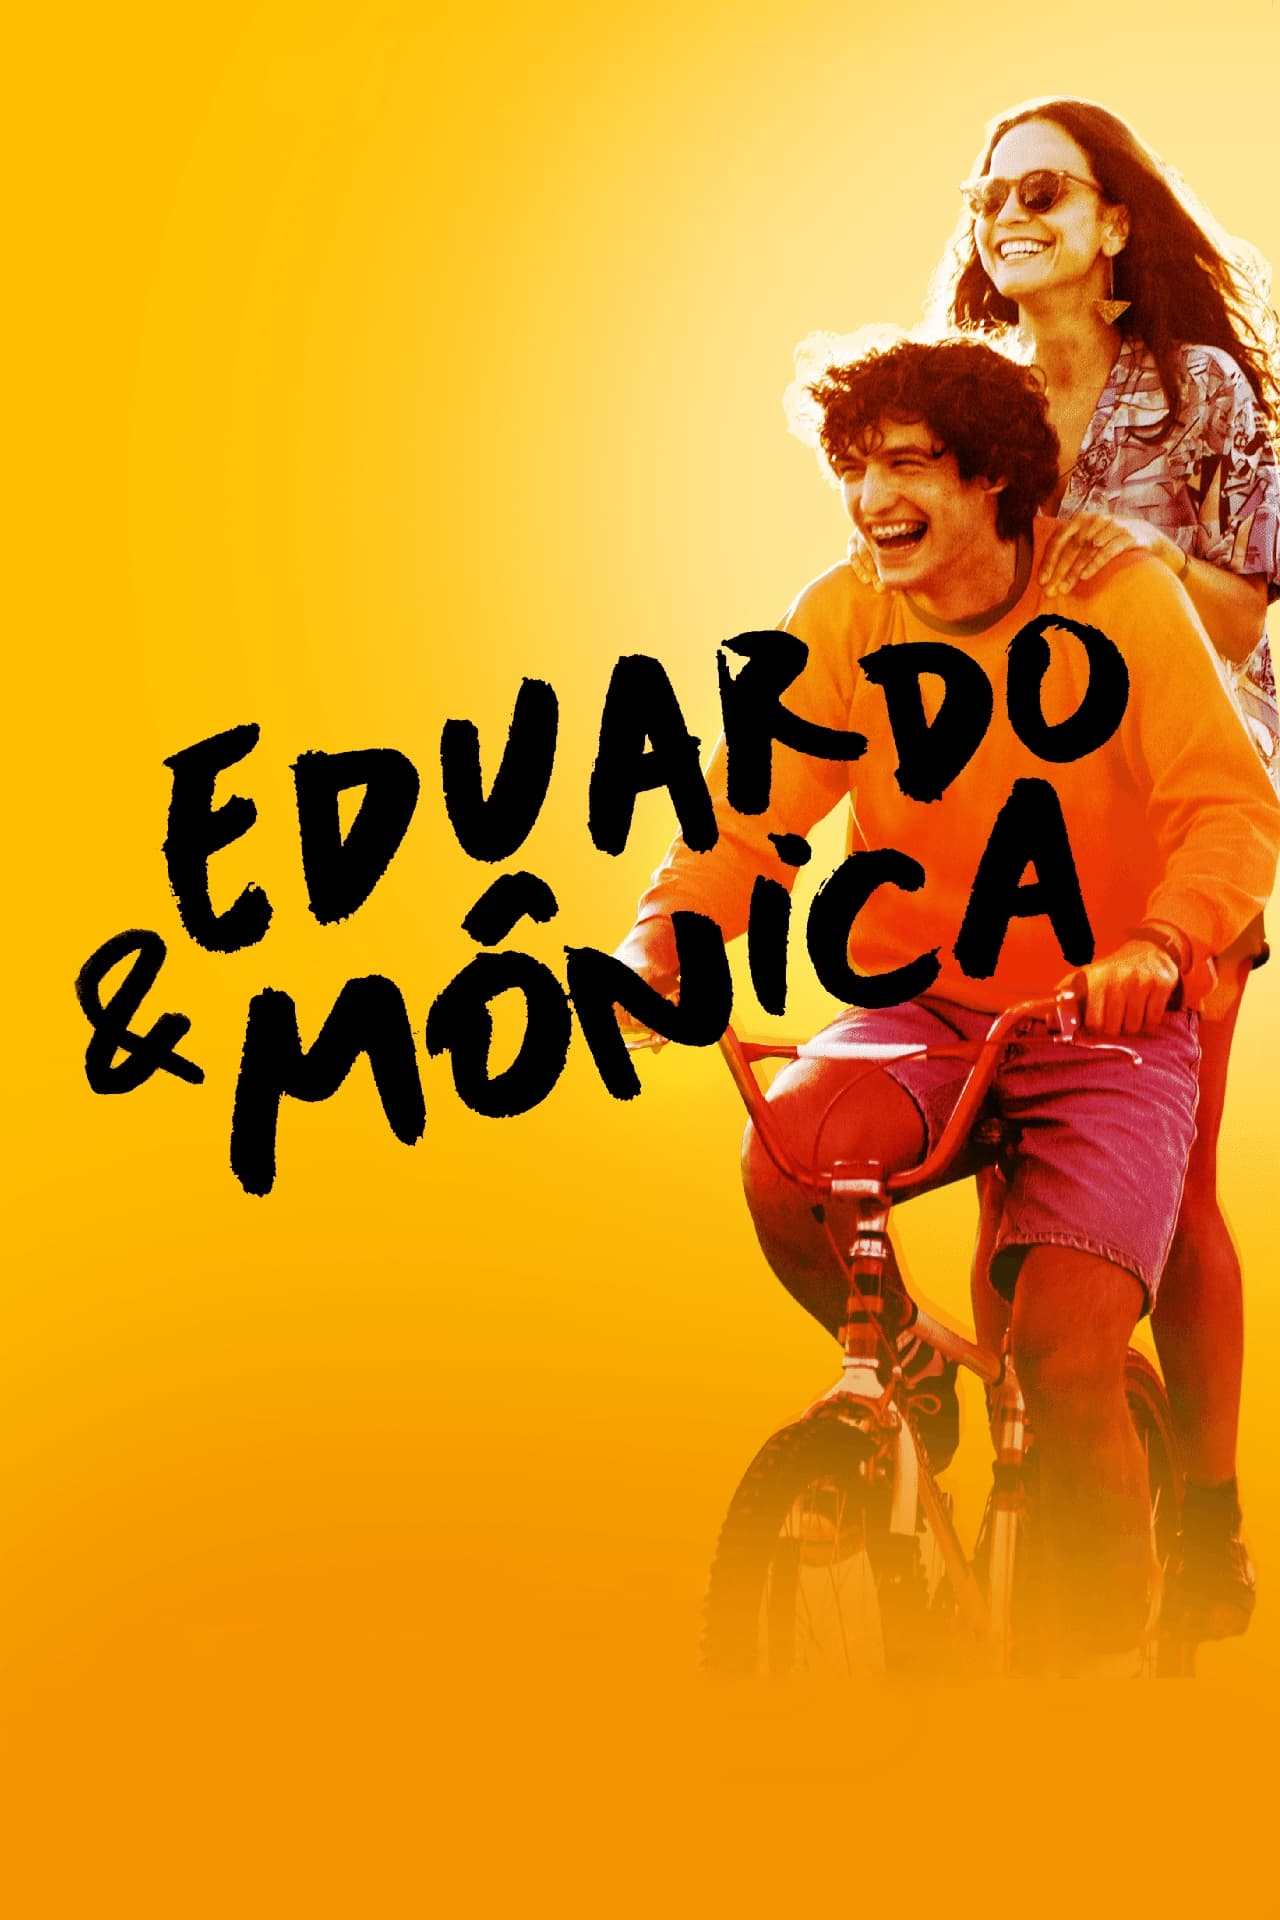 Eduardo e Mônica poster